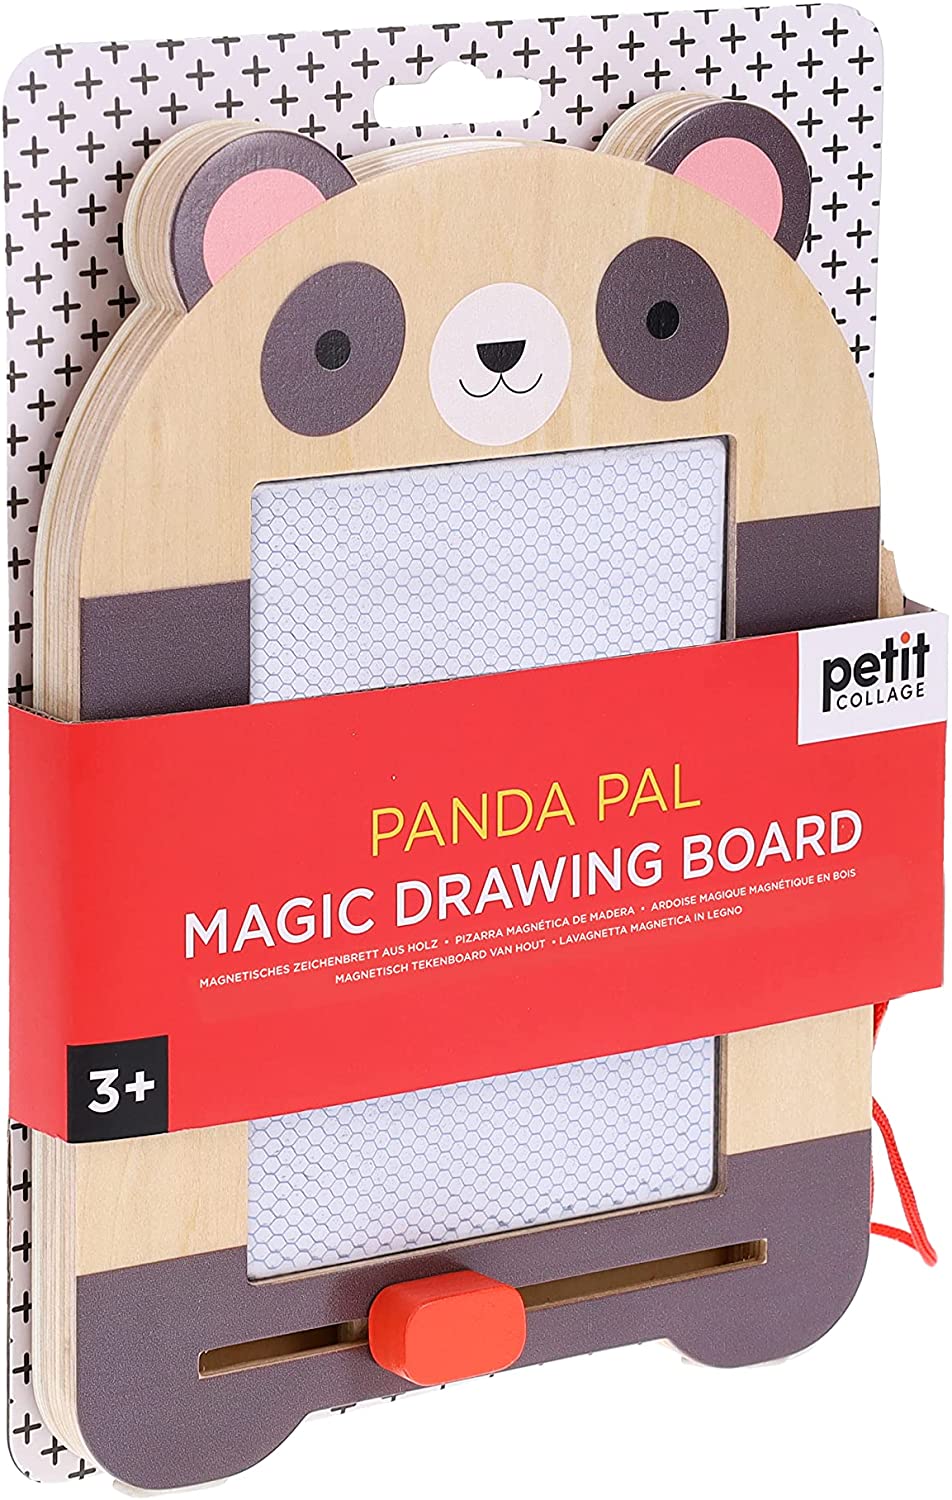 Panda Pal Magic Drawing Board - Twinkle Twinkle Little One